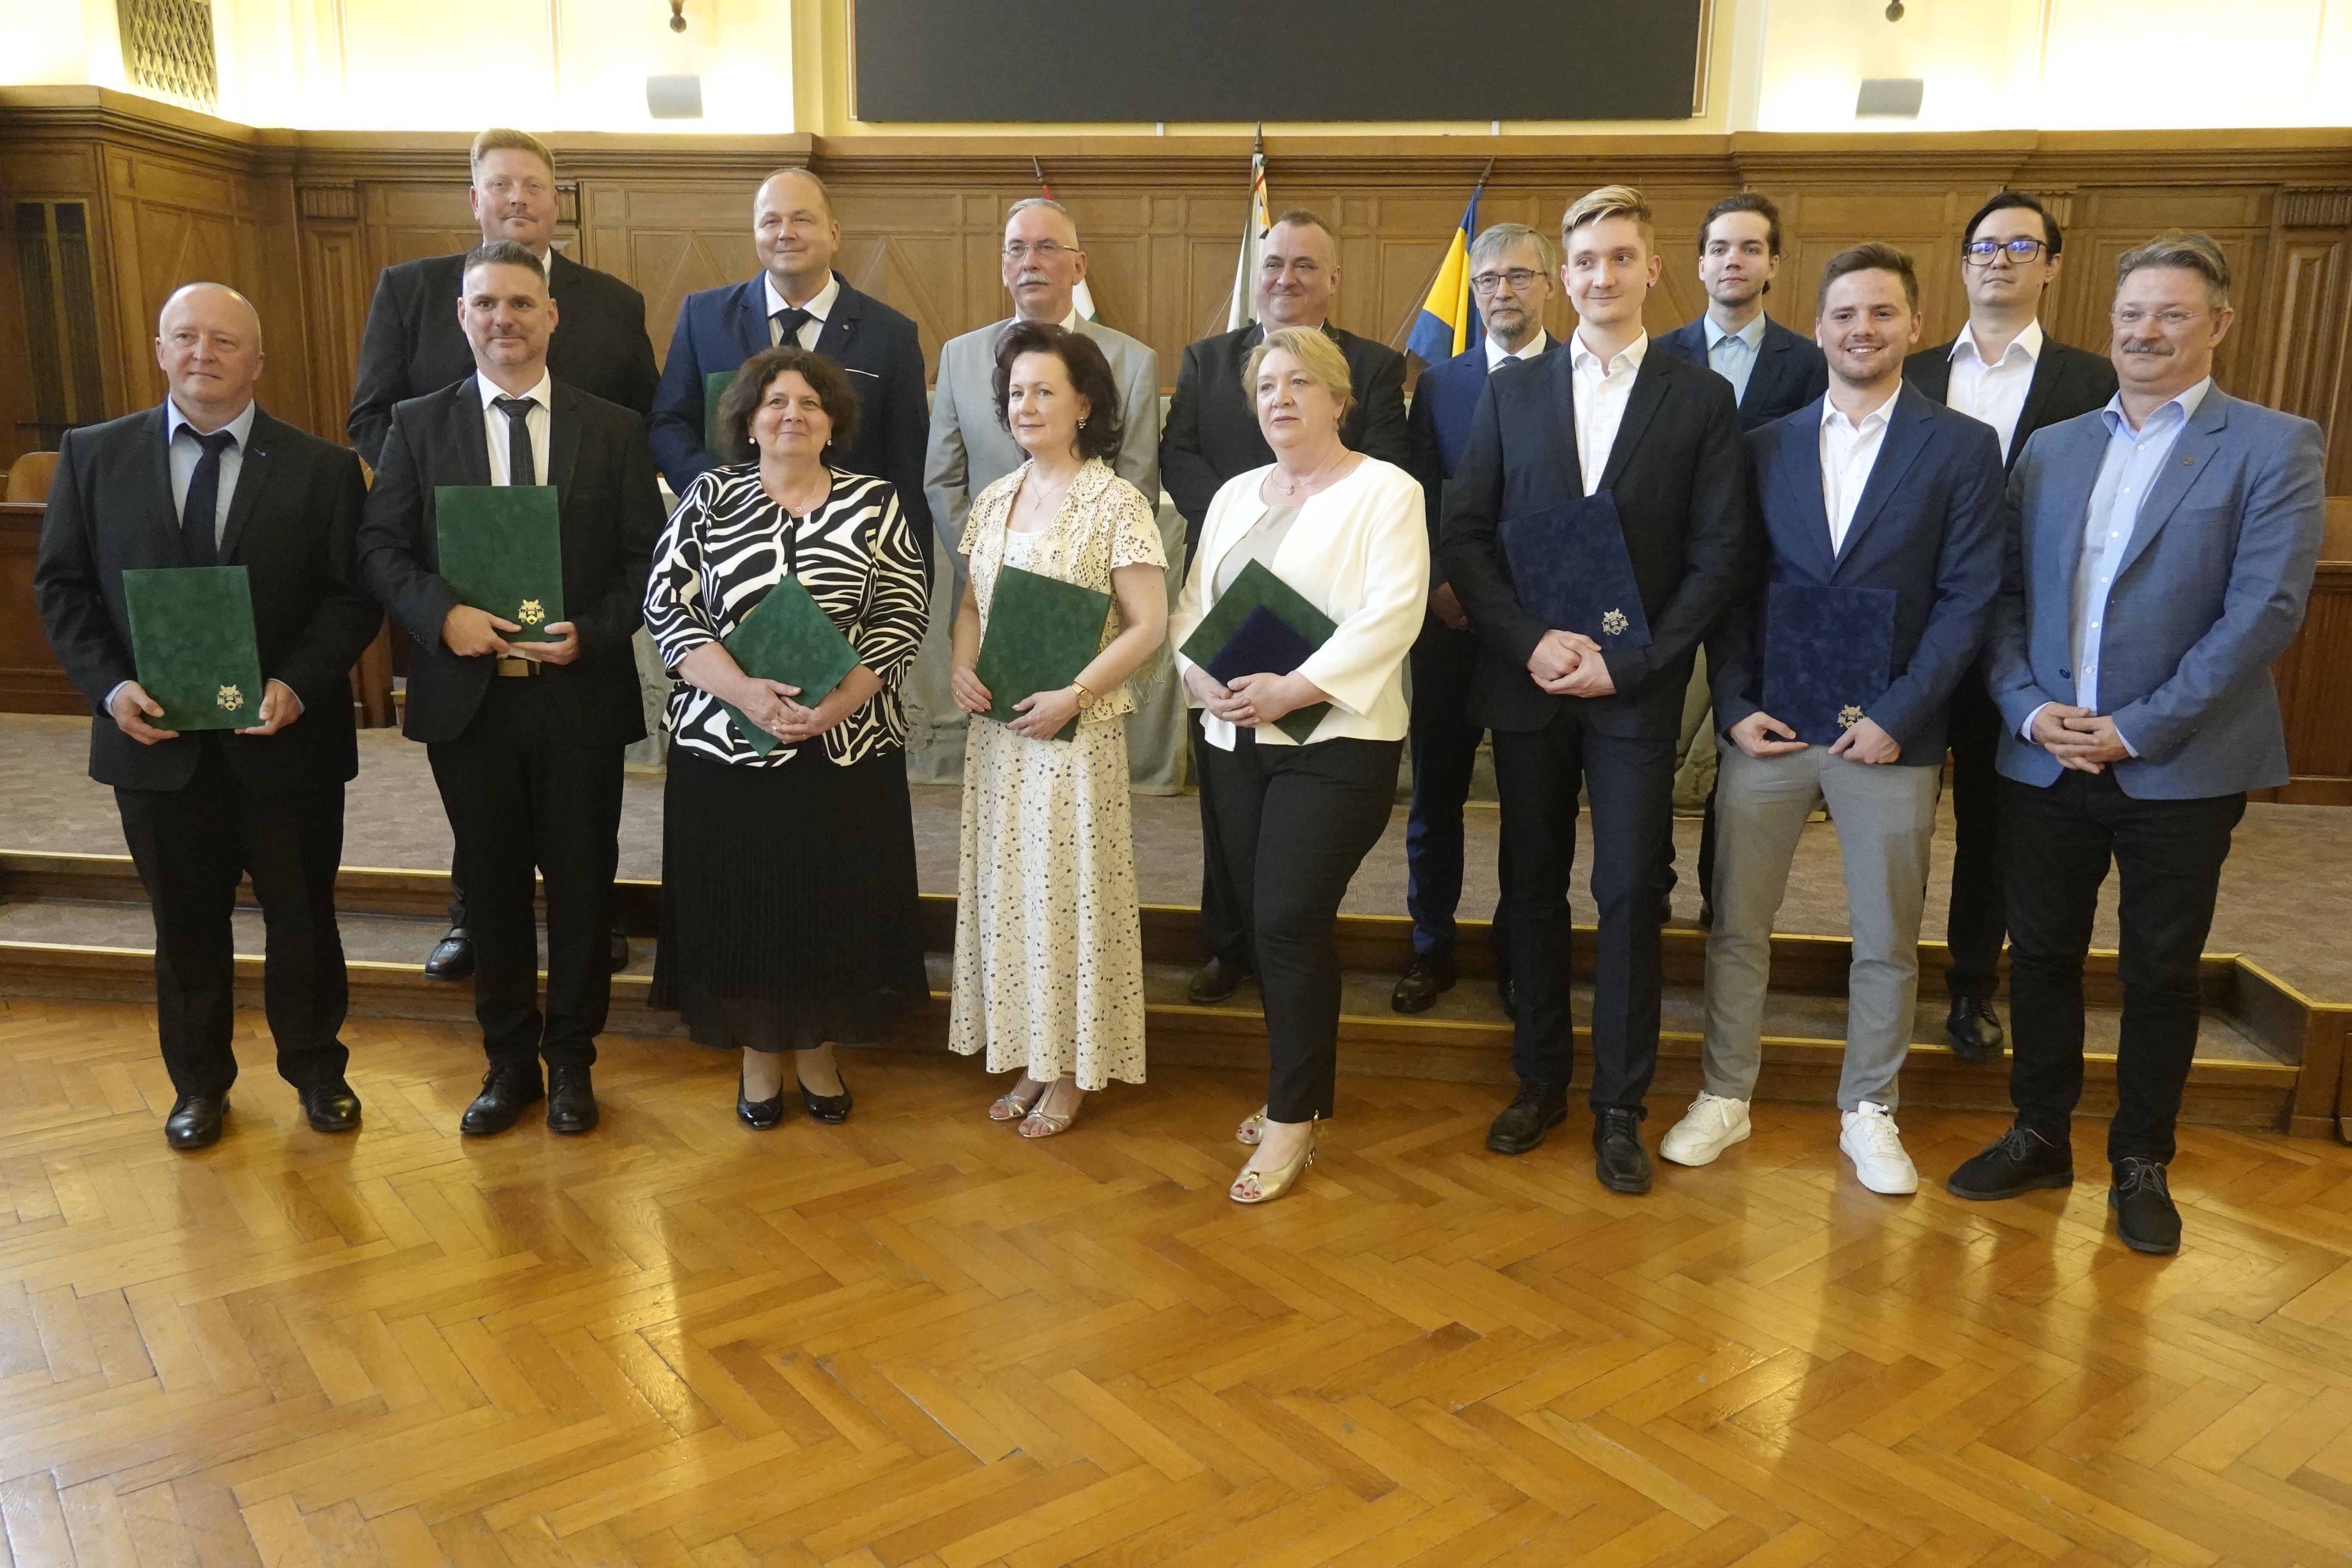 Elismerte pedagógusait a Debreceni Egyetem